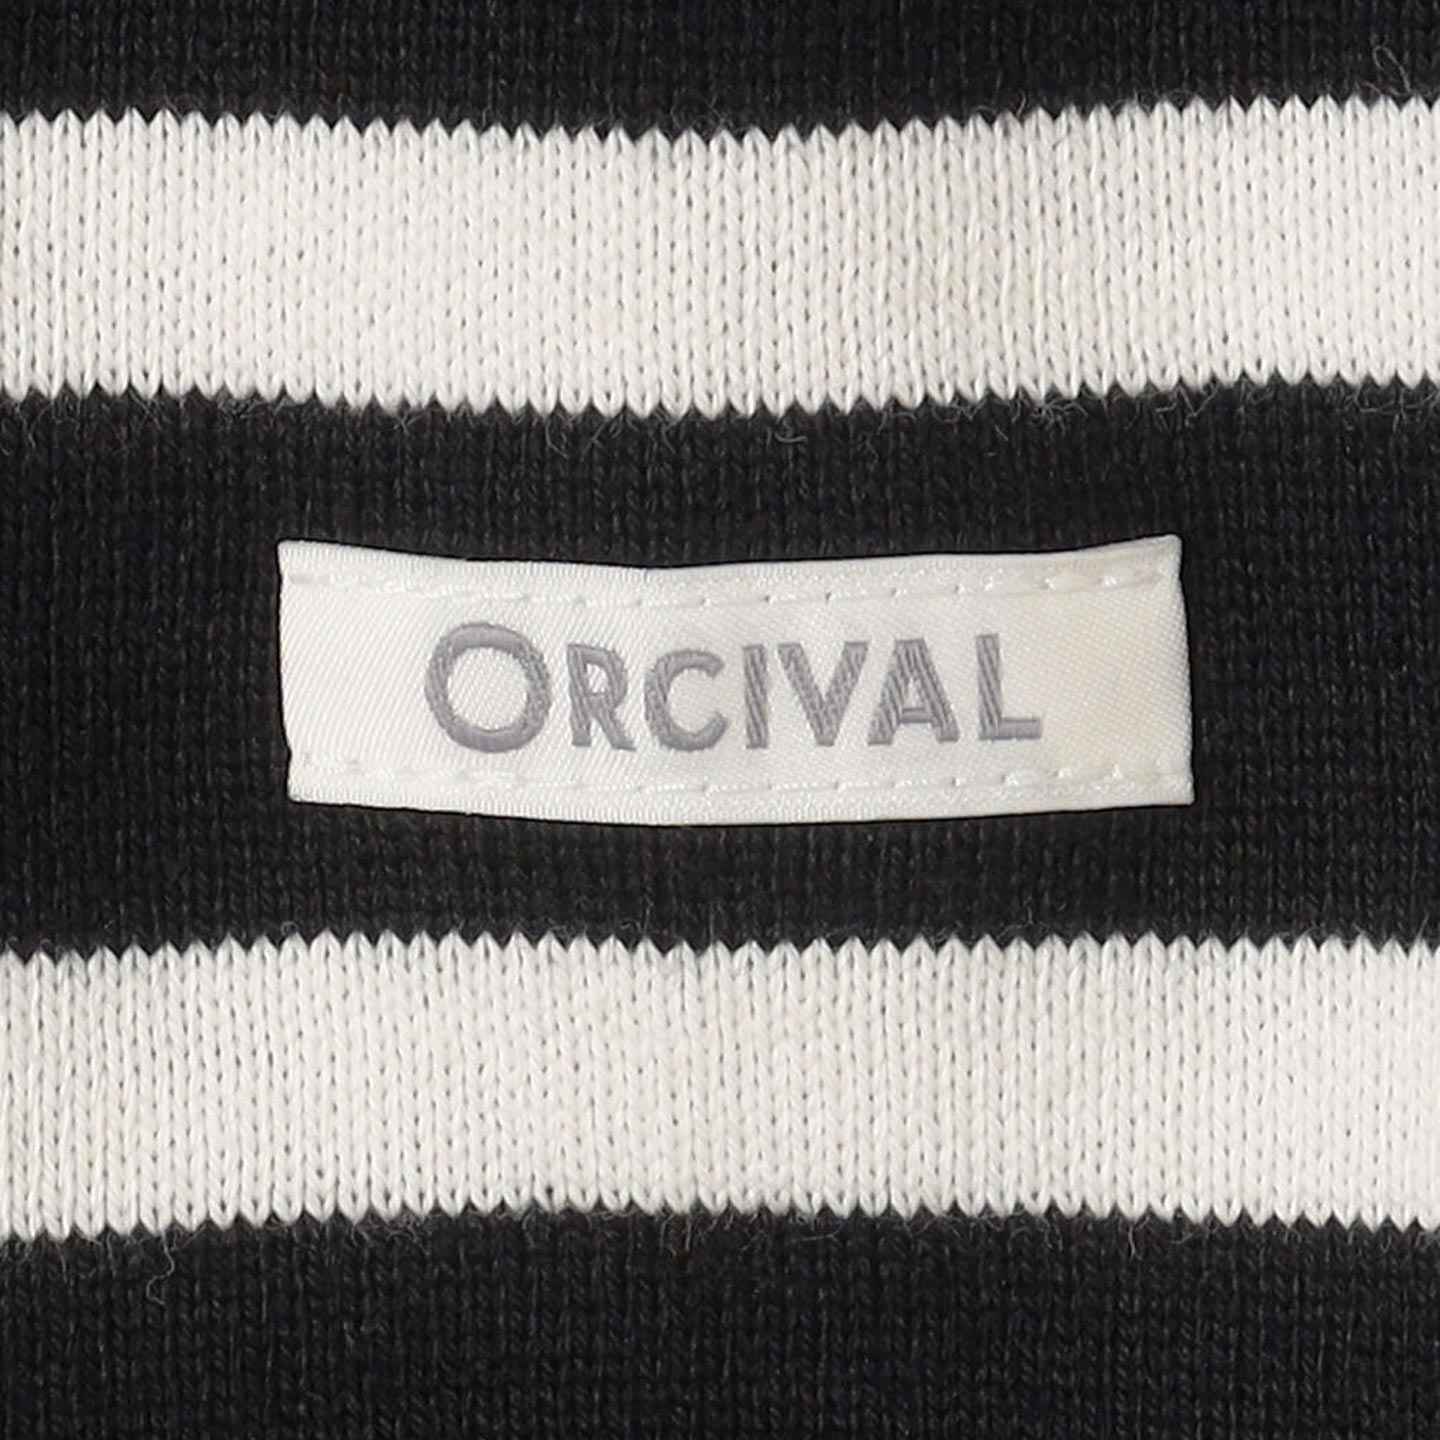 Round collar Striped cotton pullover Black / White Orcival